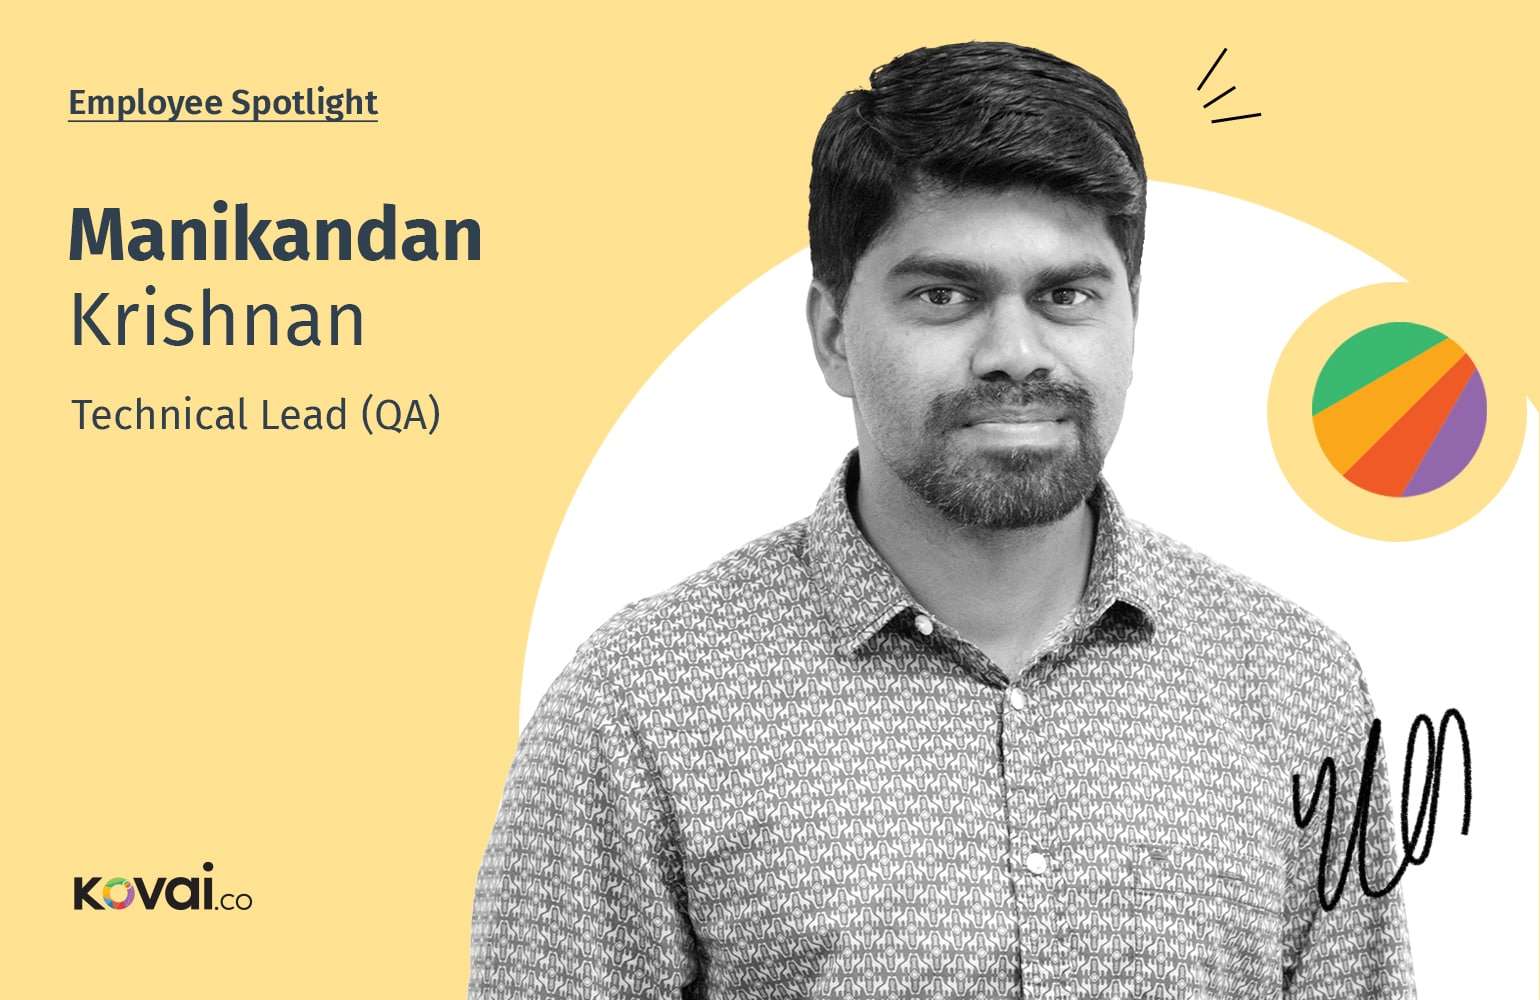 Manikandan Krishnan: Employee Spotlight